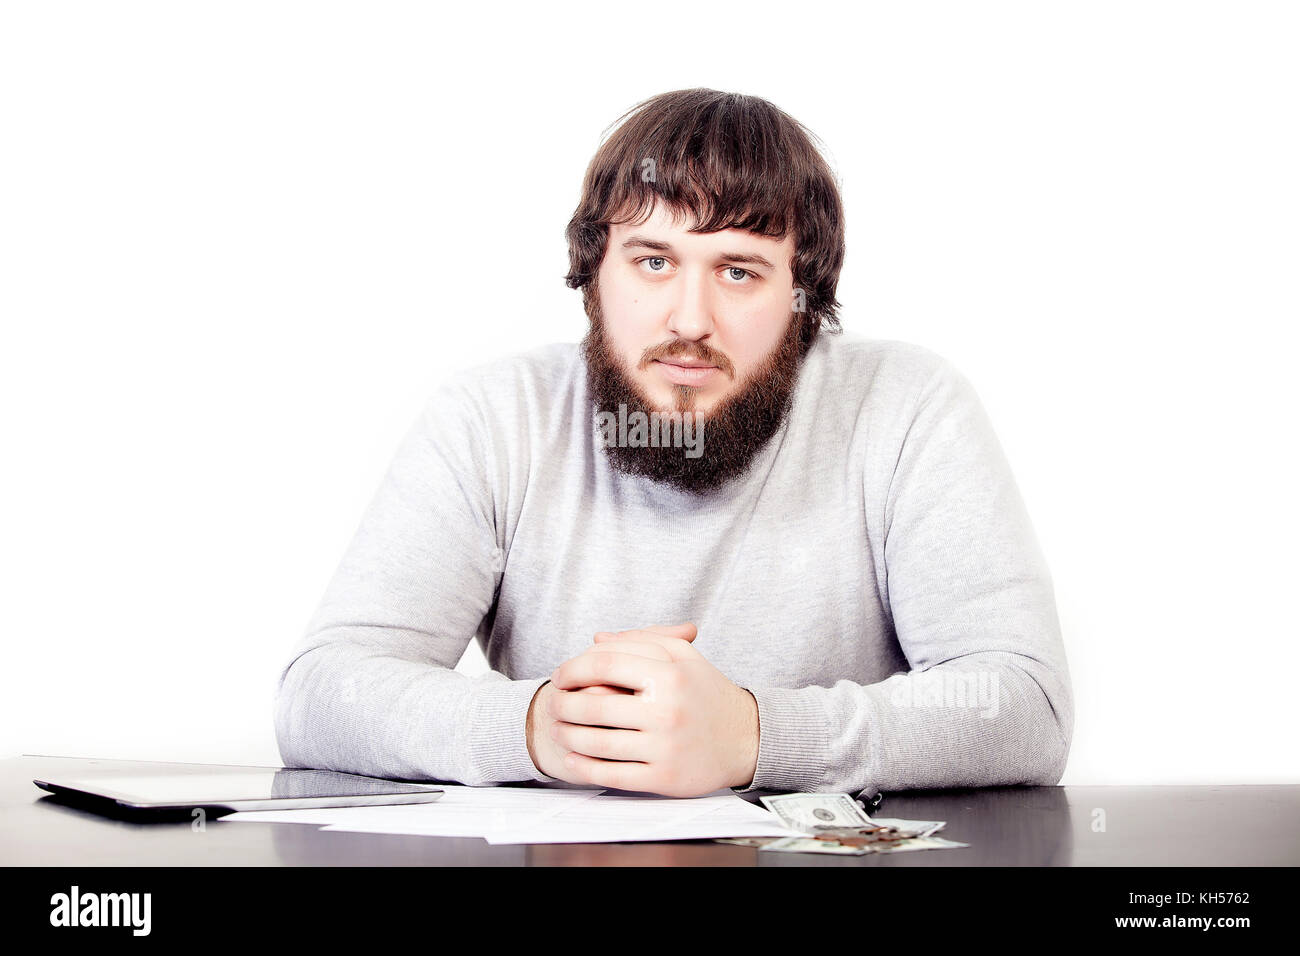 Ritratto di giovane imprenditore della barba, seduti in posizione rilassata in ufficio a tavola con aspetto piacevole. fiducioso maschio persona di business Foto Stock